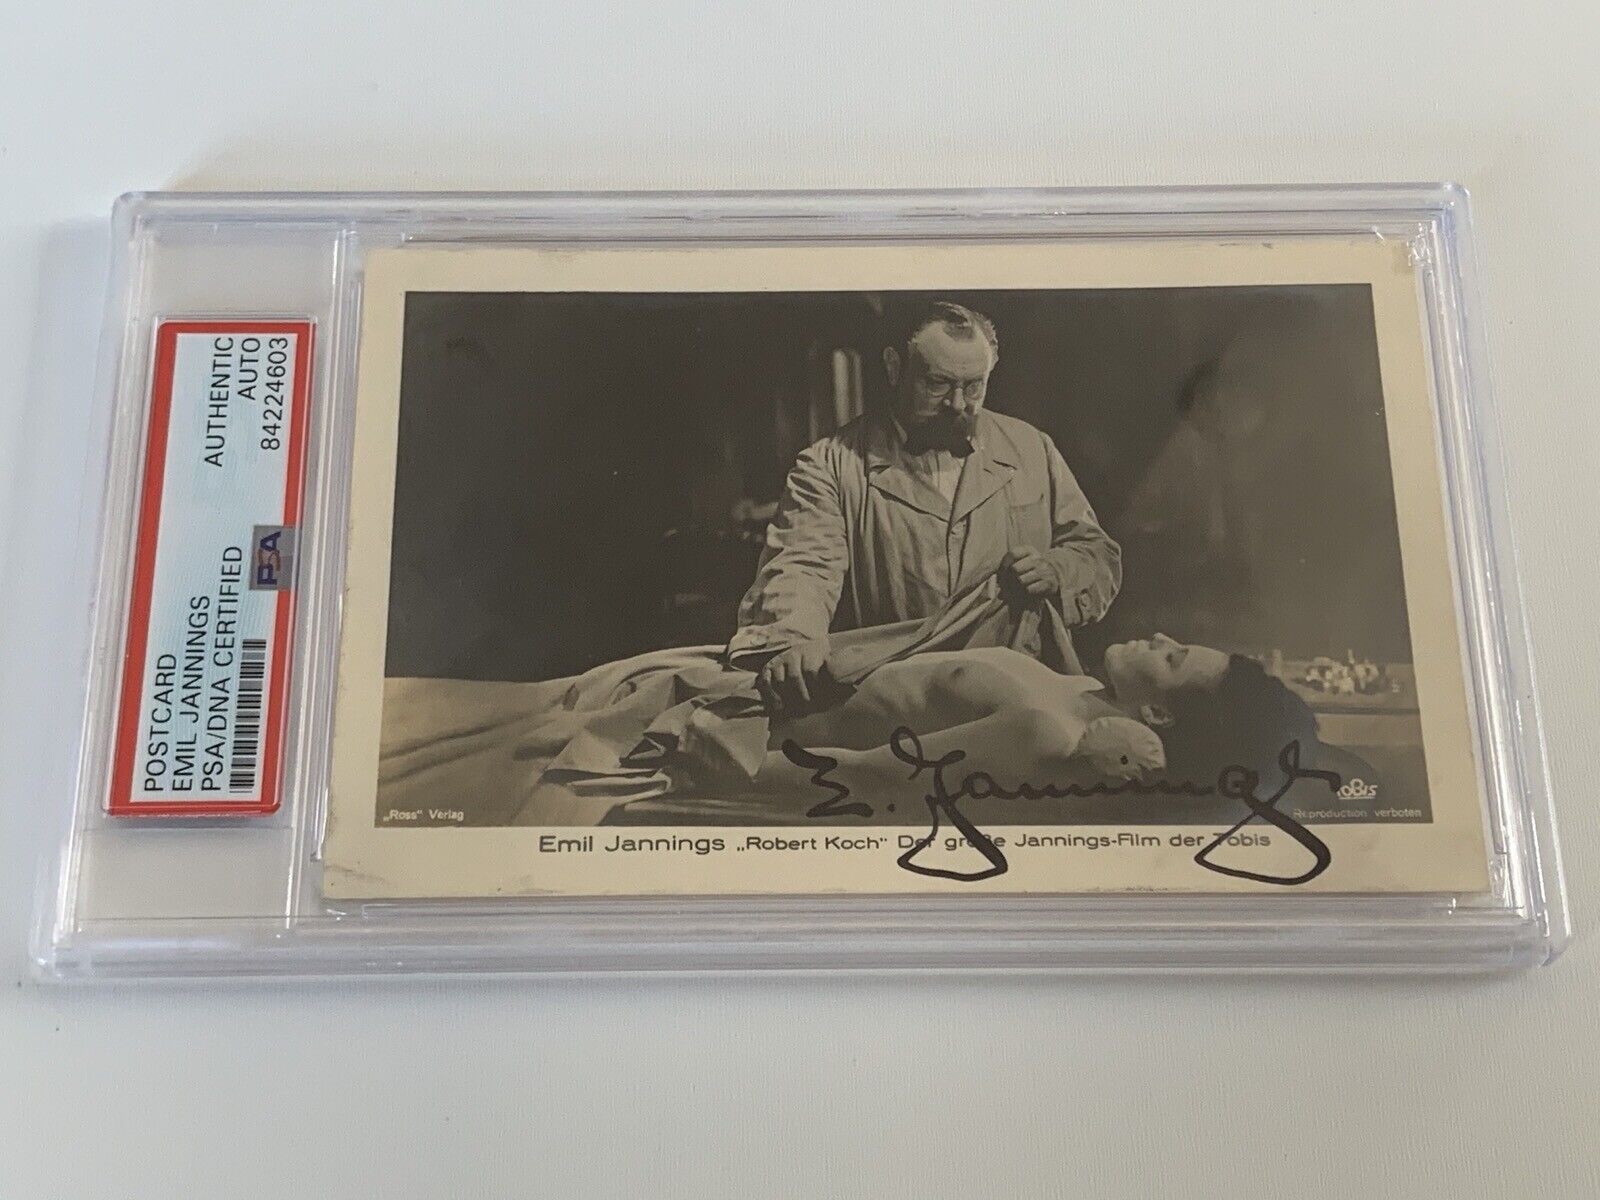 Emil Jannings 1920s Best Actor Signed Autograph Photo Postcard PSA DNA j2f1c